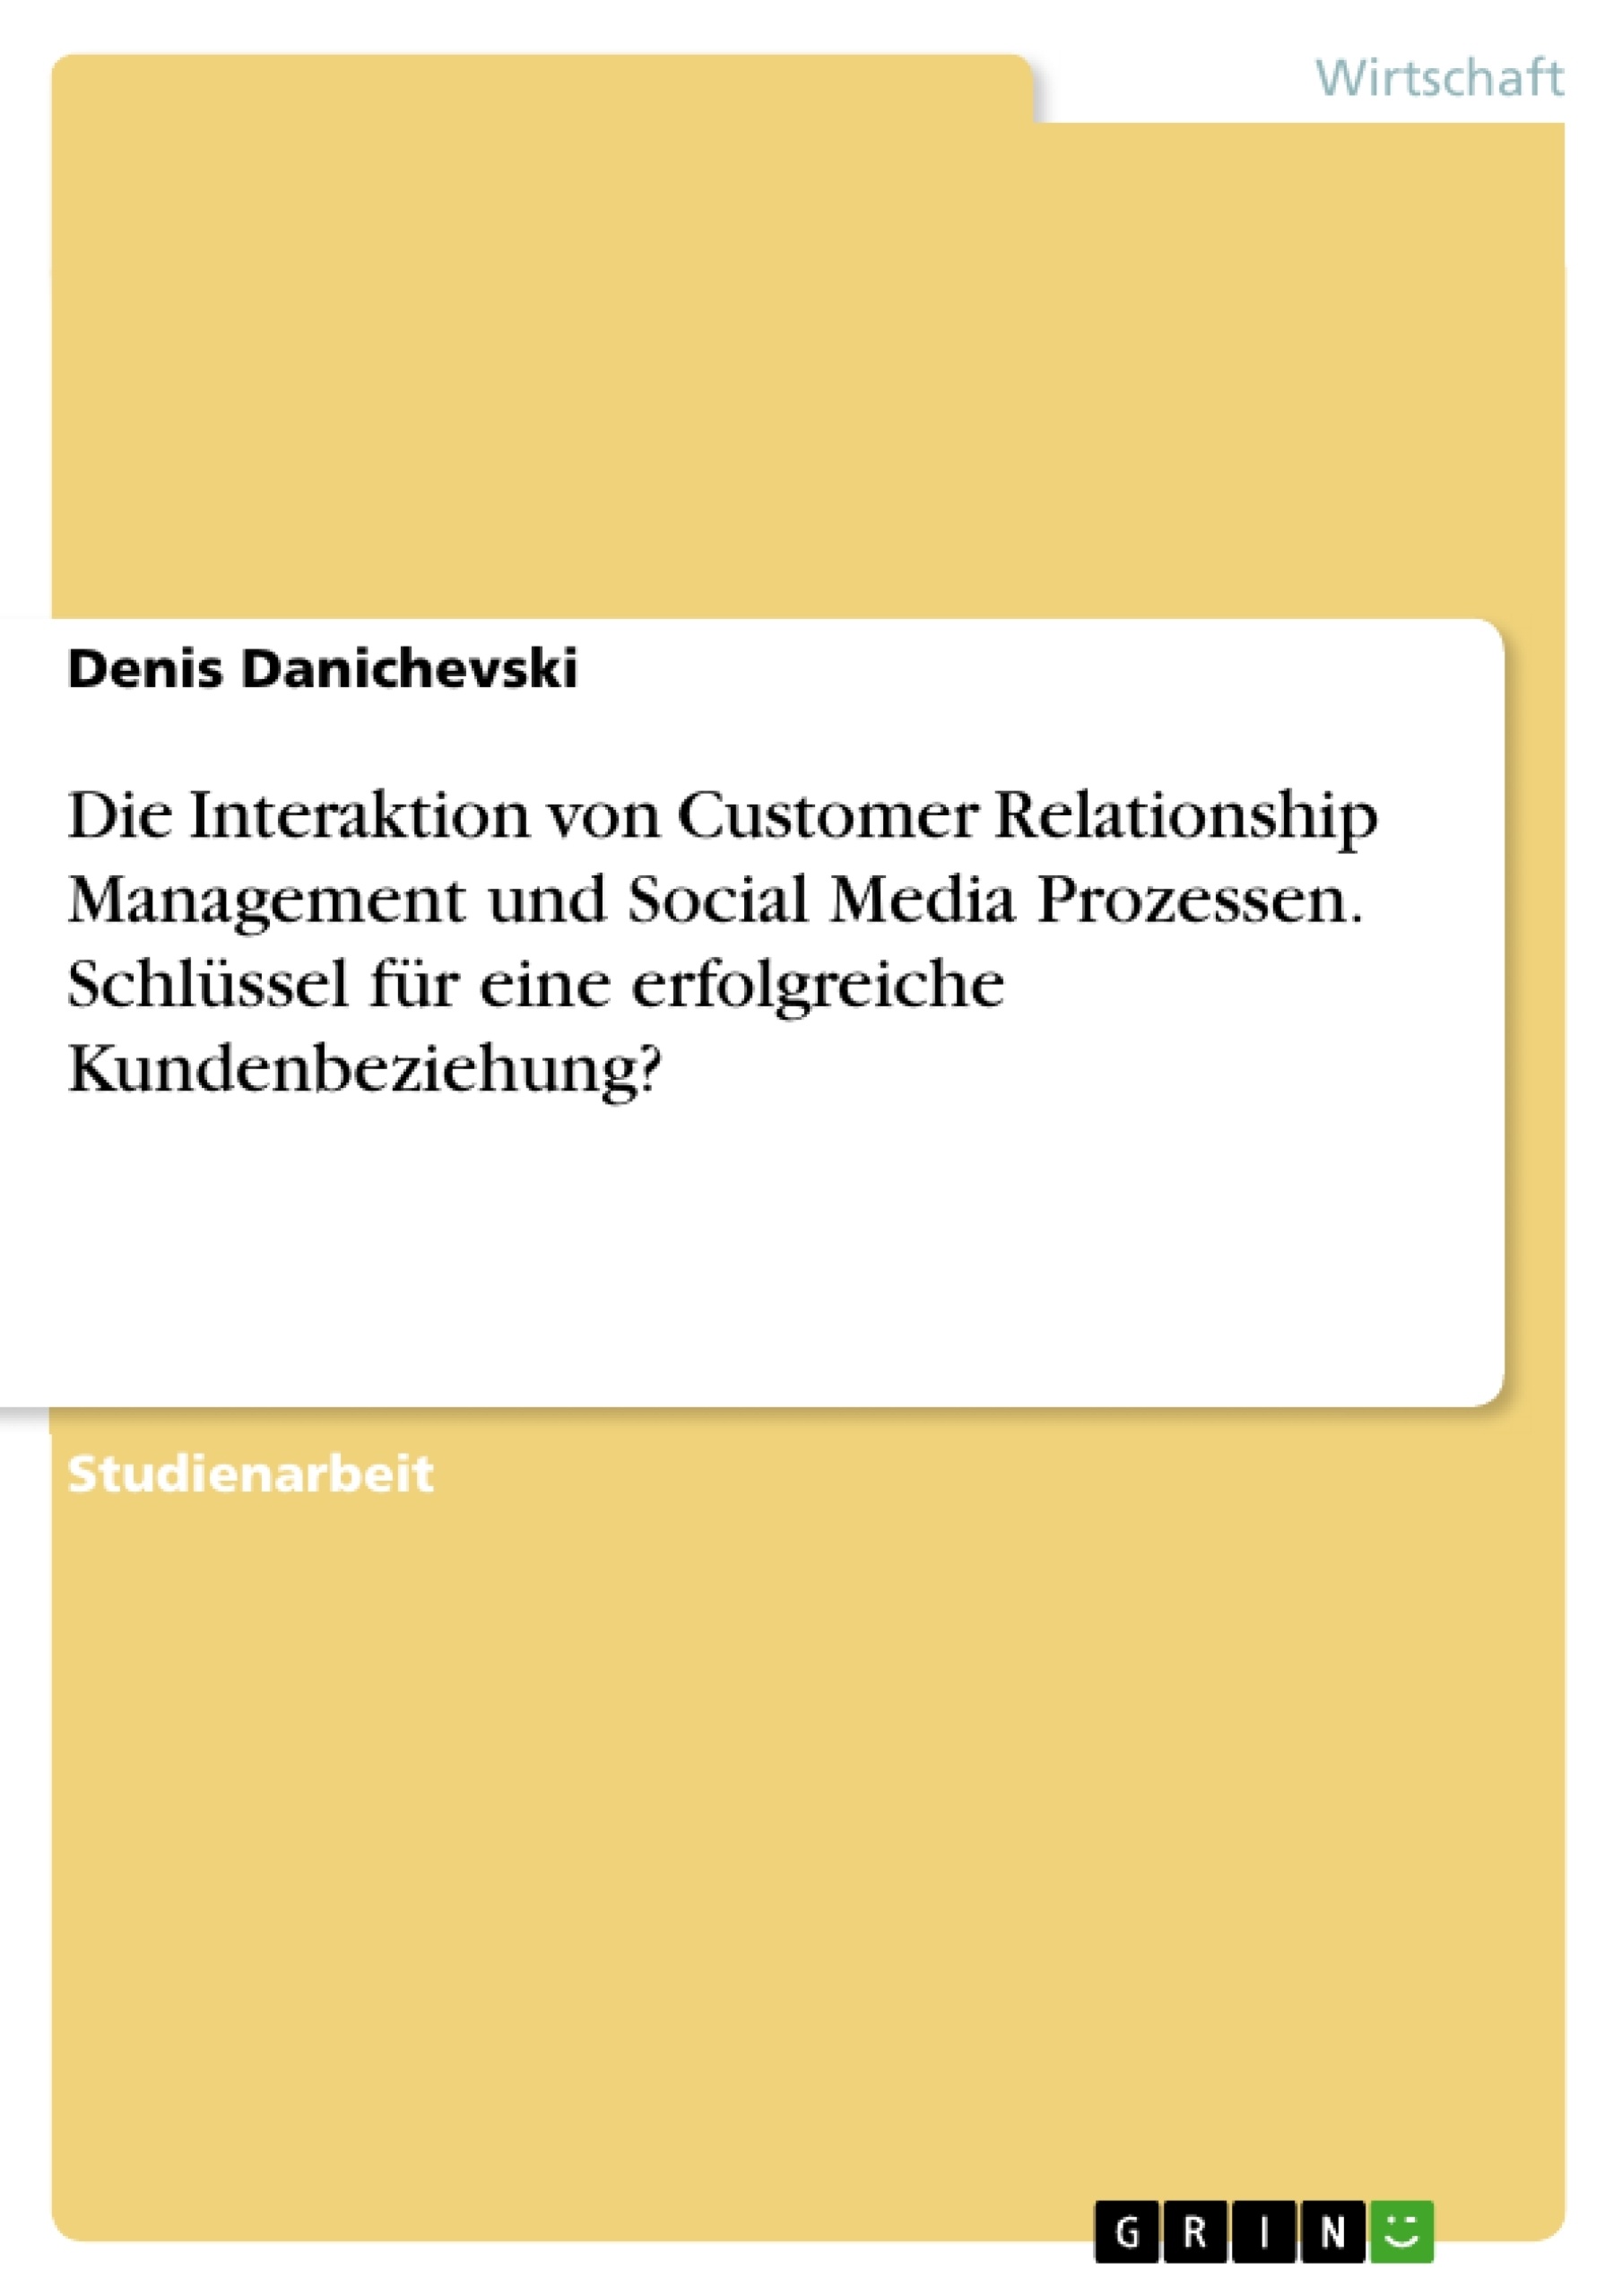 Título: Die Interaktion von Customer Relationship Management und Social Media Prozessen. Schlüssel für eine erfolgreiche Kundenbeziehung?